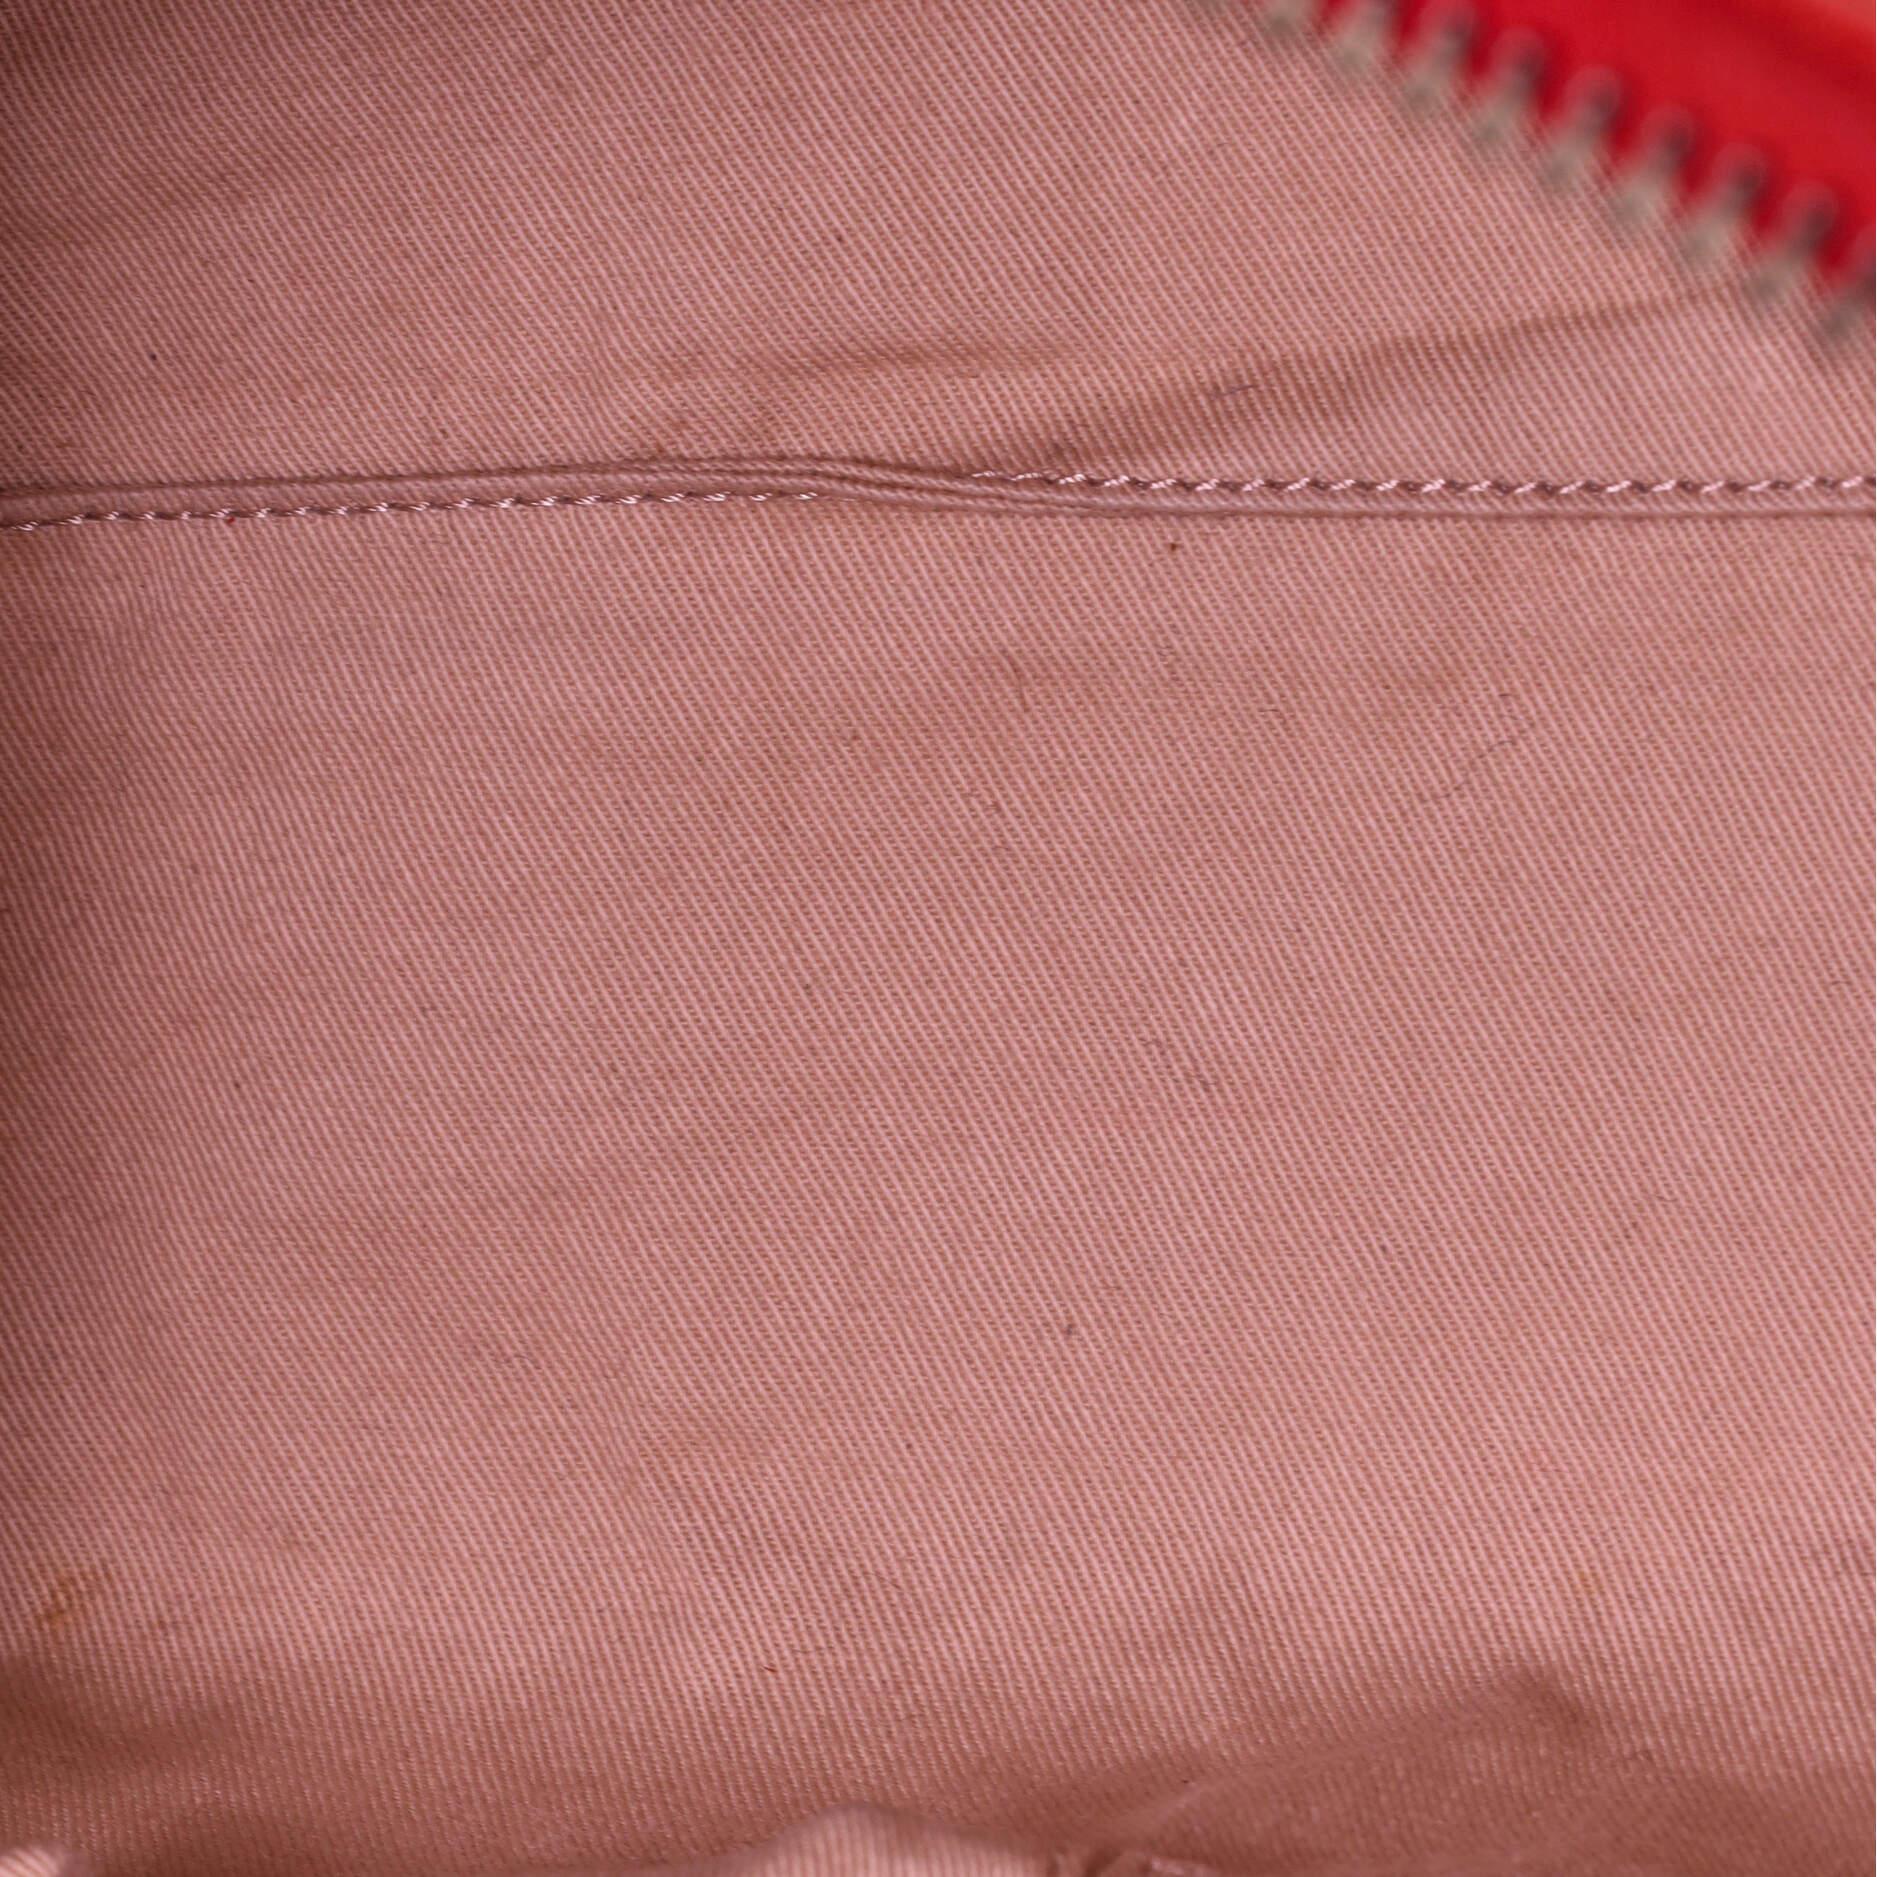 Red Givenchy Antigona Bag Leather Small